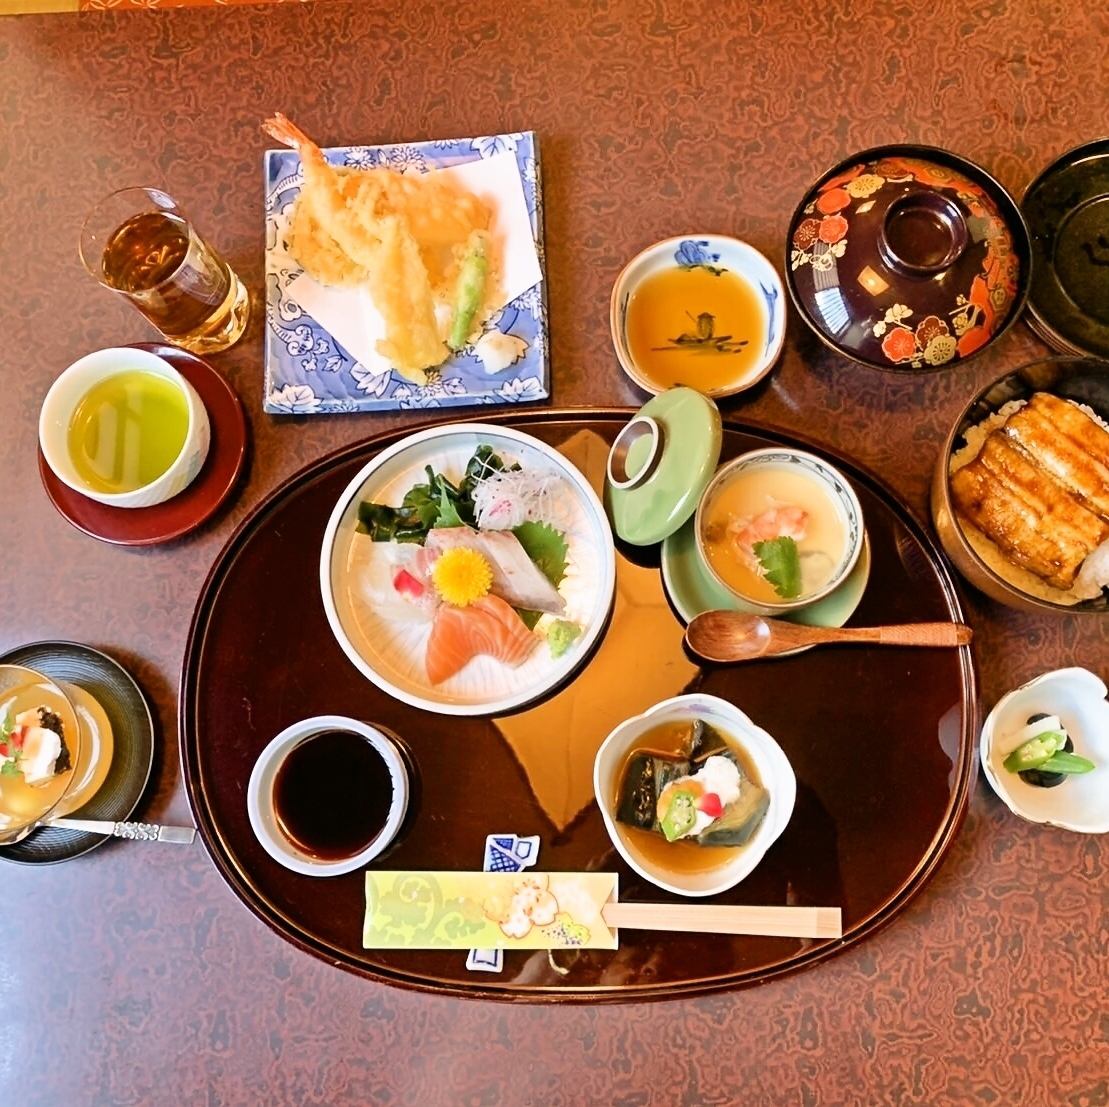 부담없이 즐길 수 있는 『오노미 어선』은 4400엔(세금 포함)으로 준비